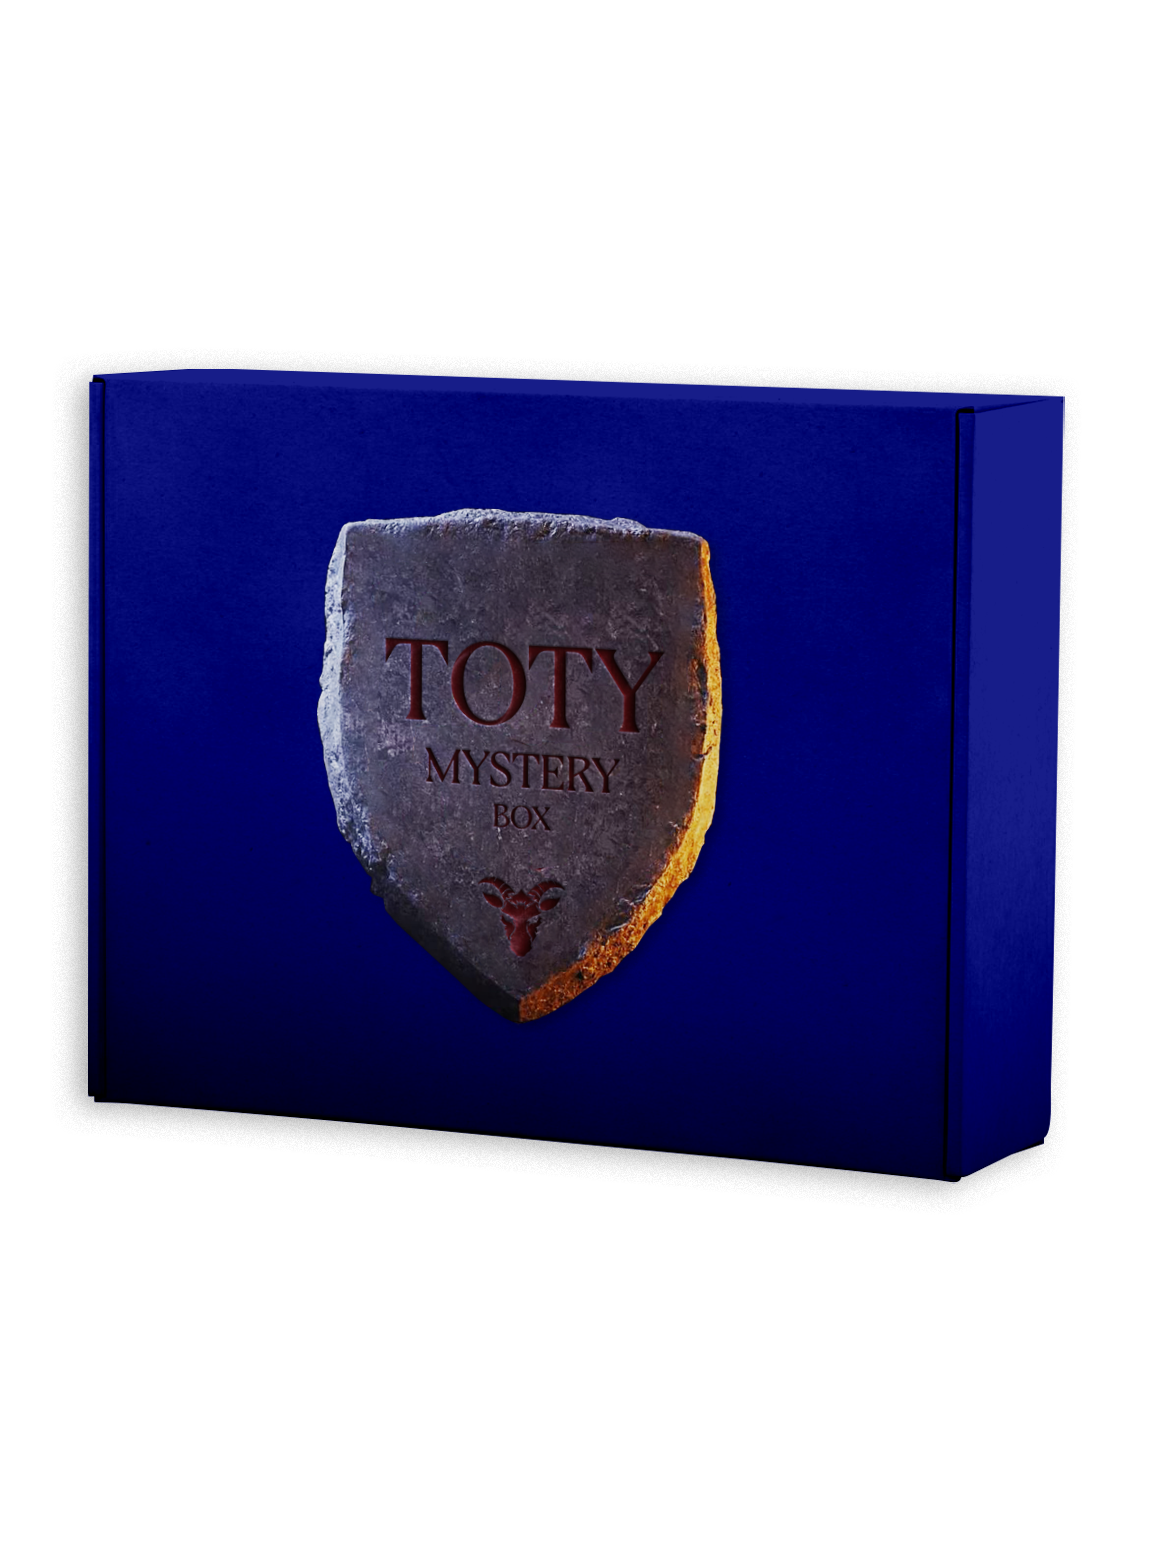 TOTY Mystery Box